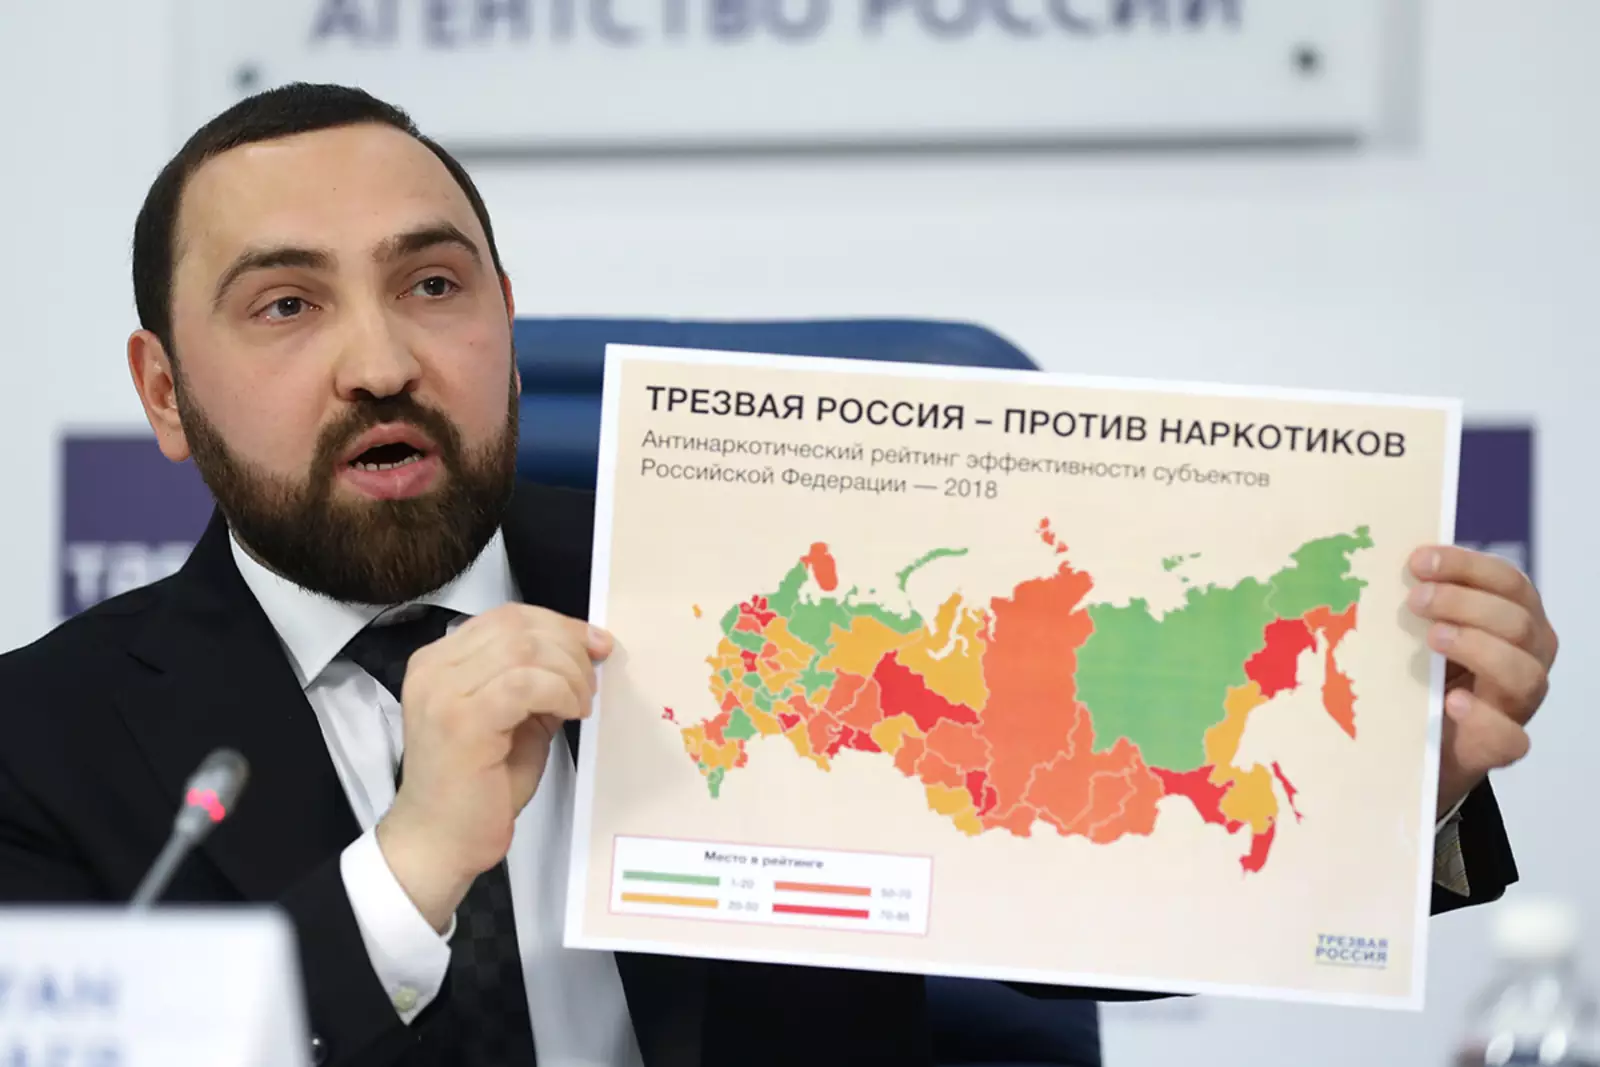 Султан Хамзаев. Пресс-конференция, посвященная результатам первого "Антинаркотического рейтинга регионов - 2018".